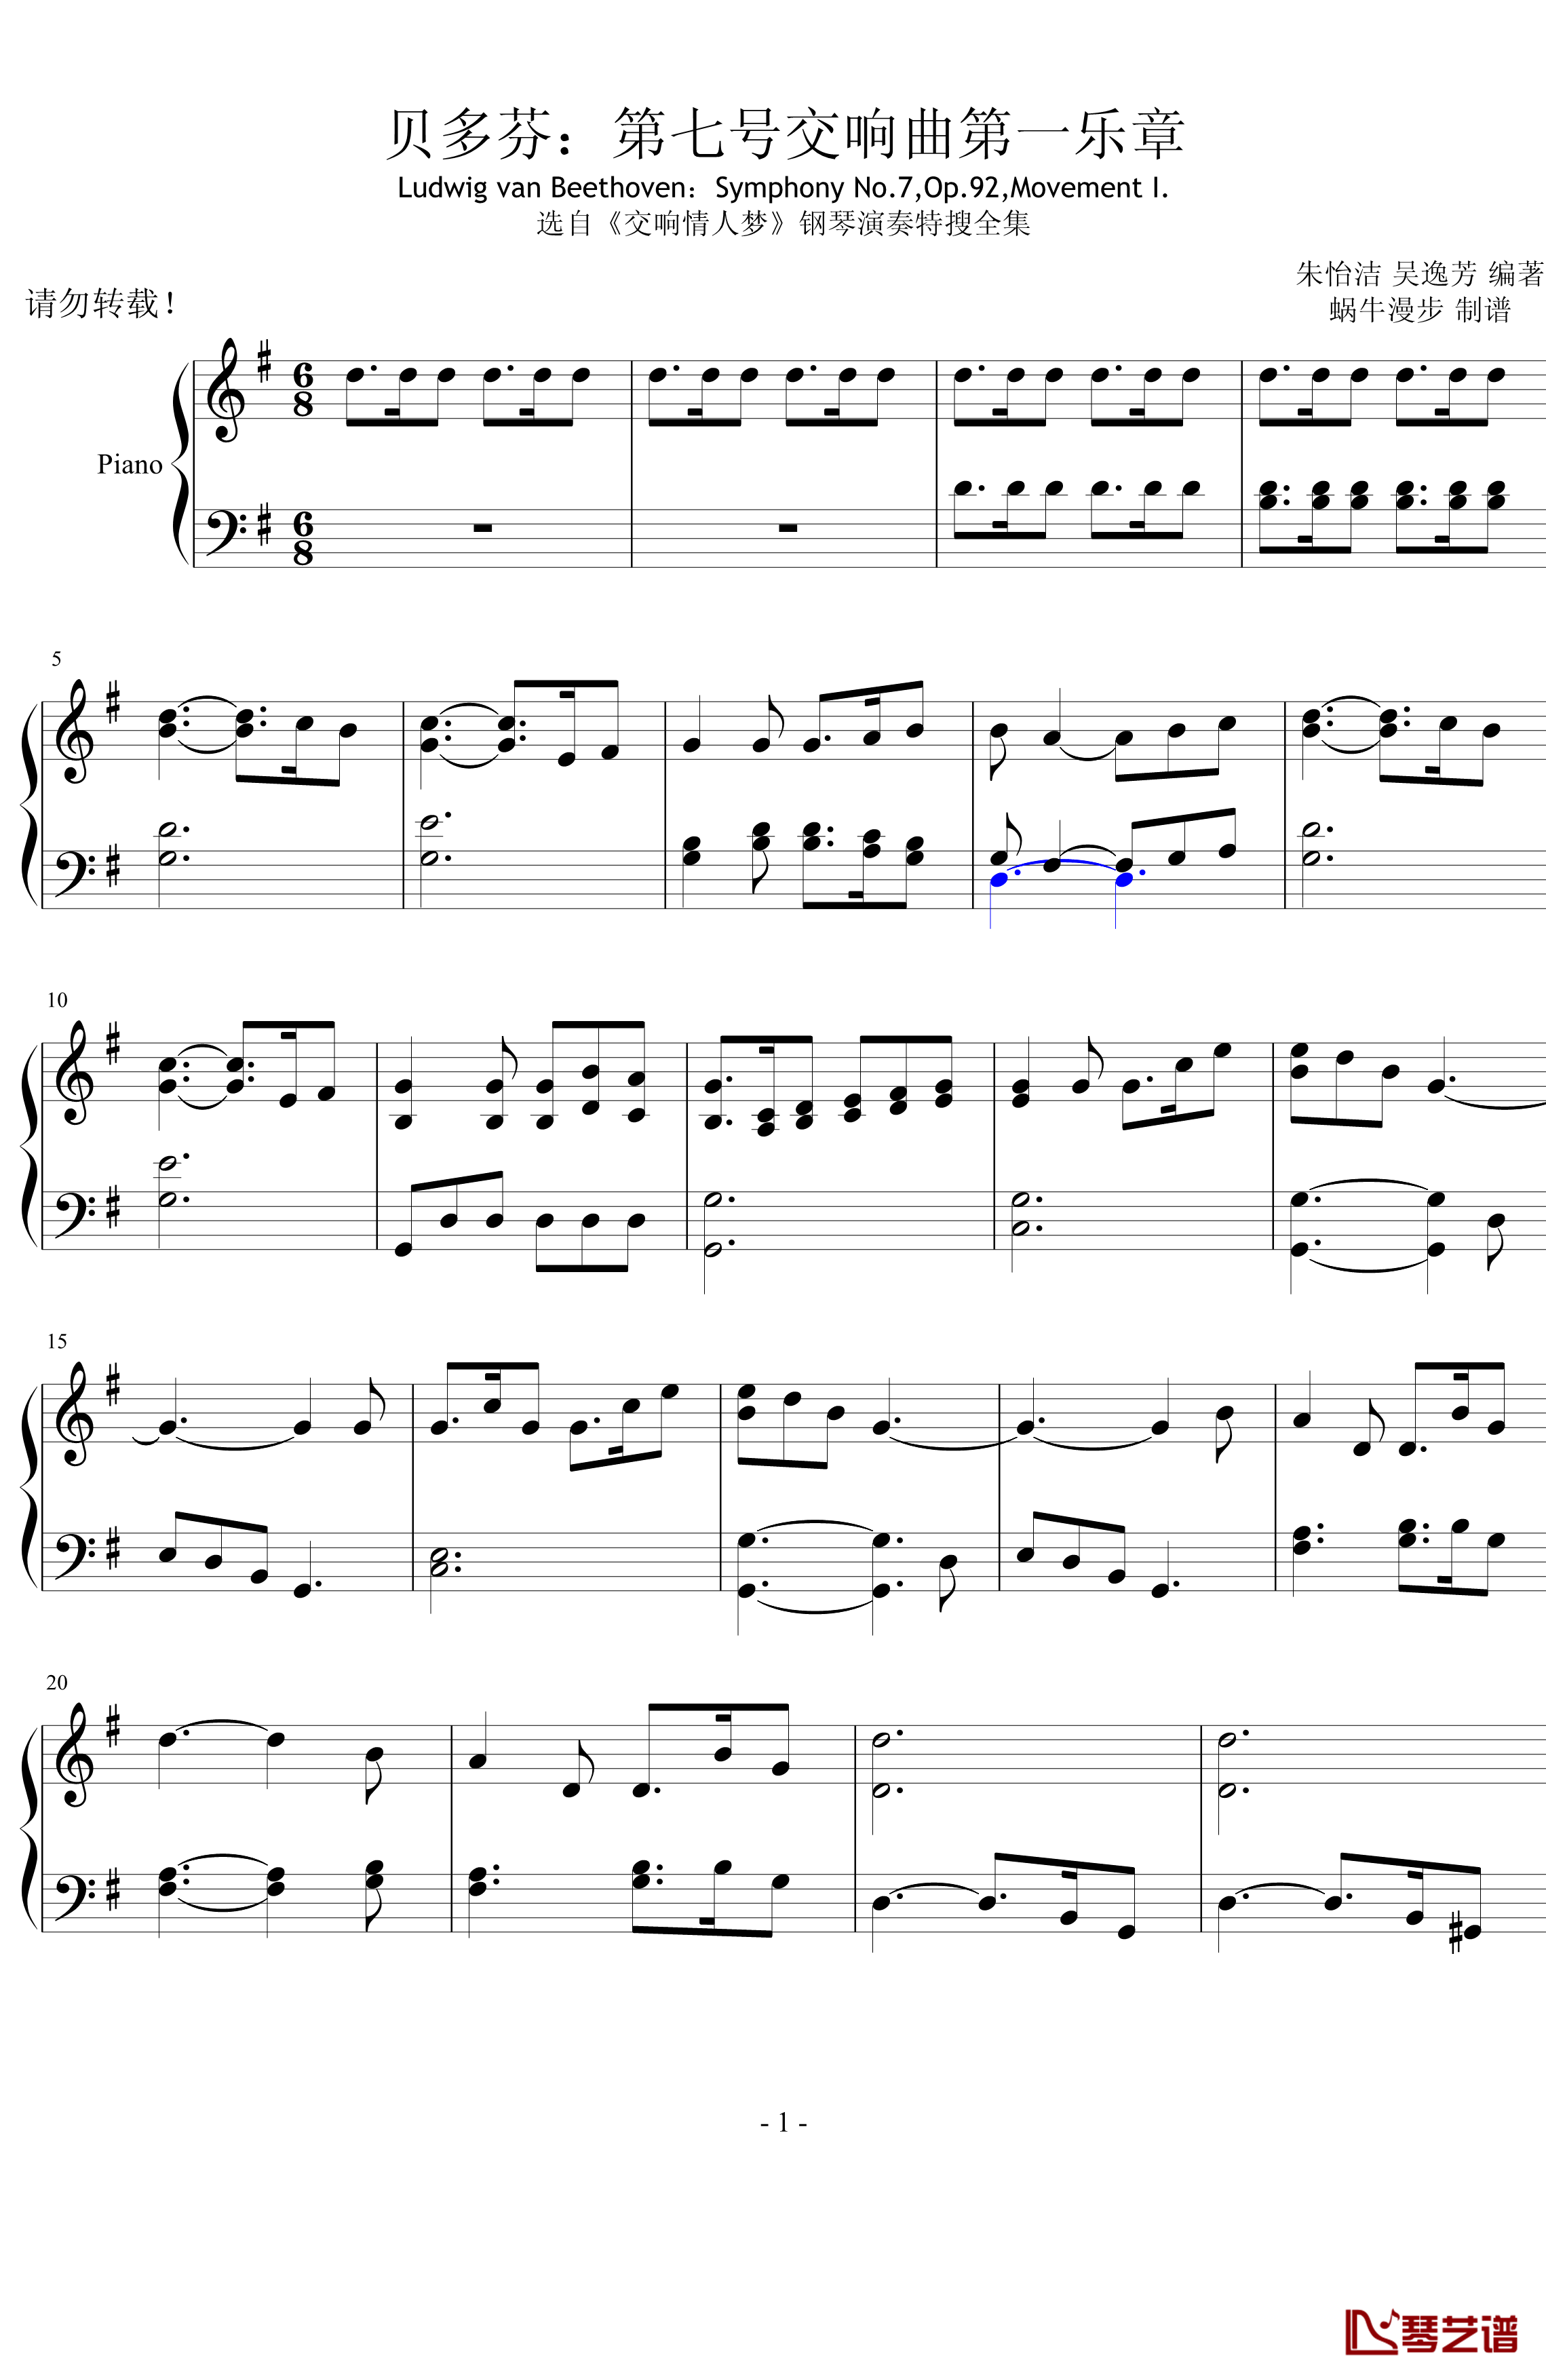 第七号交响曲第一乐章钢琴谱-贝多芬-beethoven1